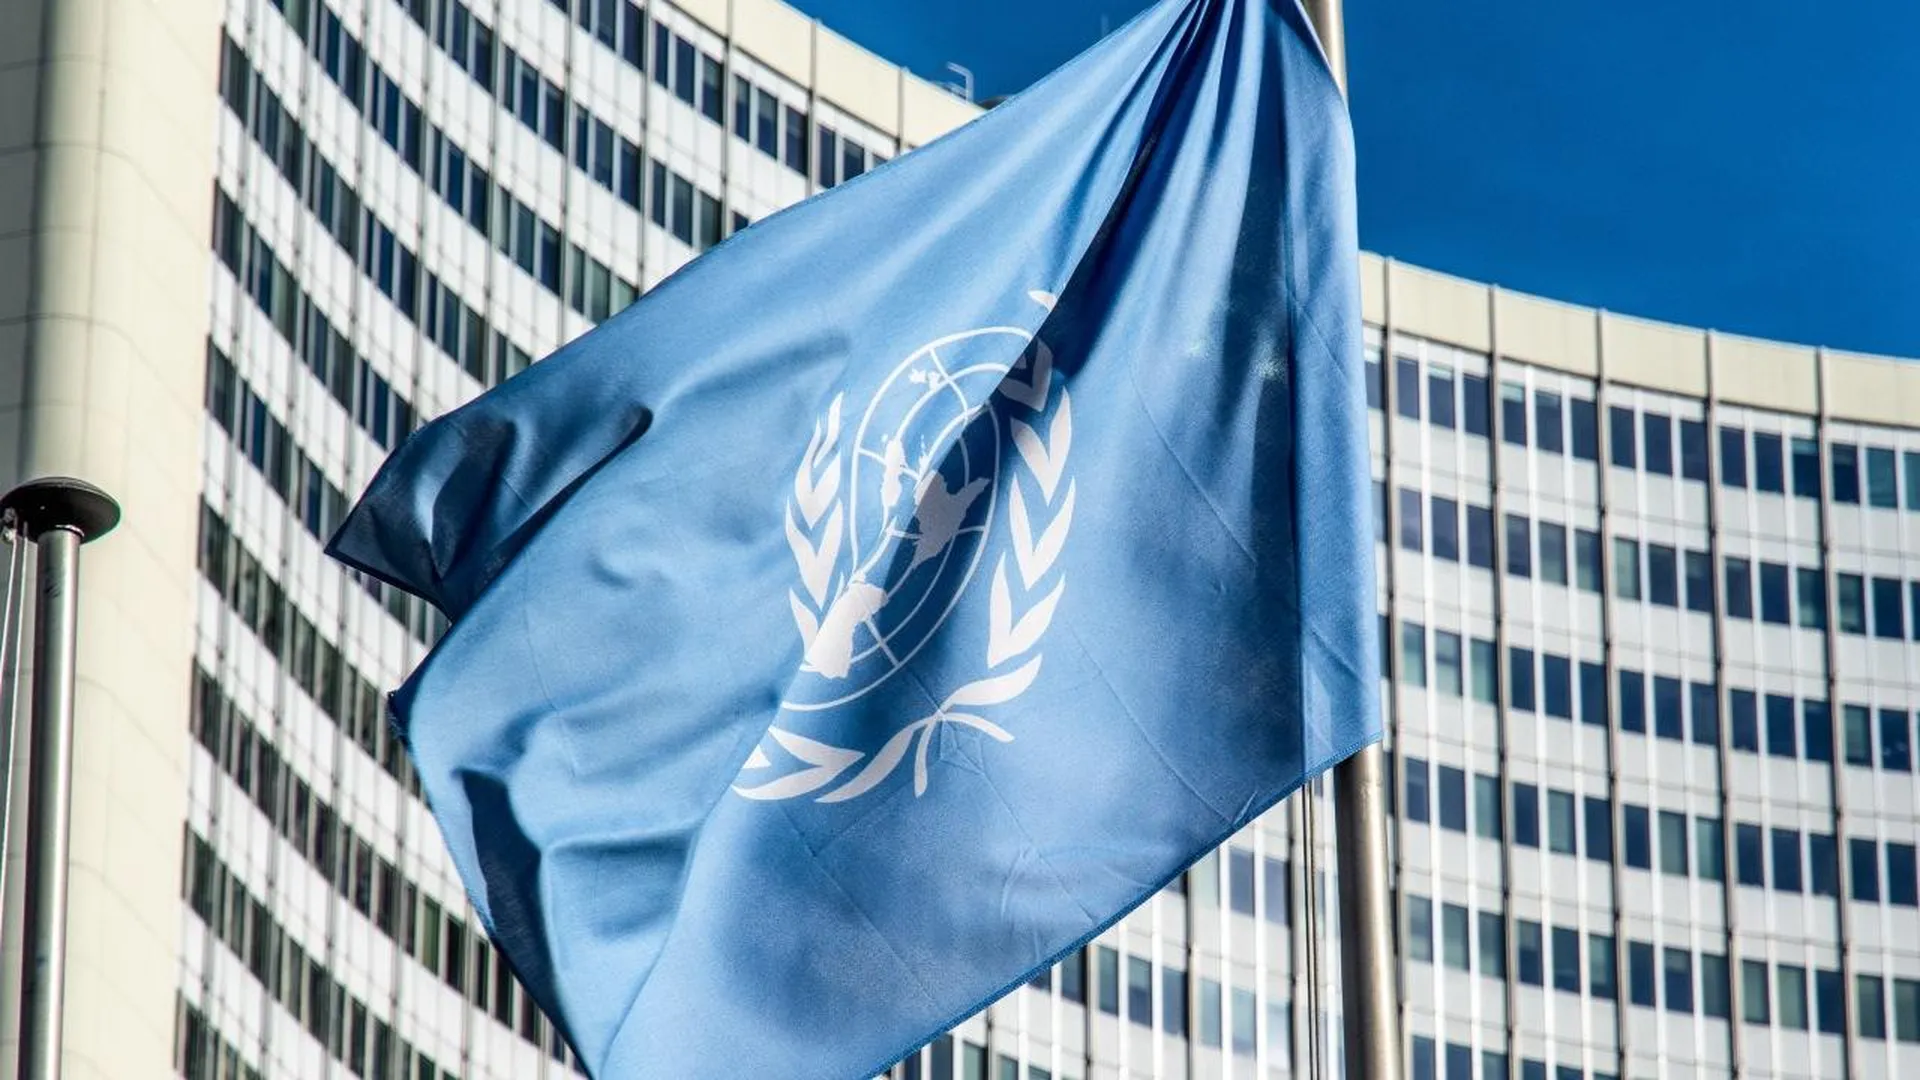 Делегации арабских стран покинули зал Совбеза ООН во время выступления представителя Израиля